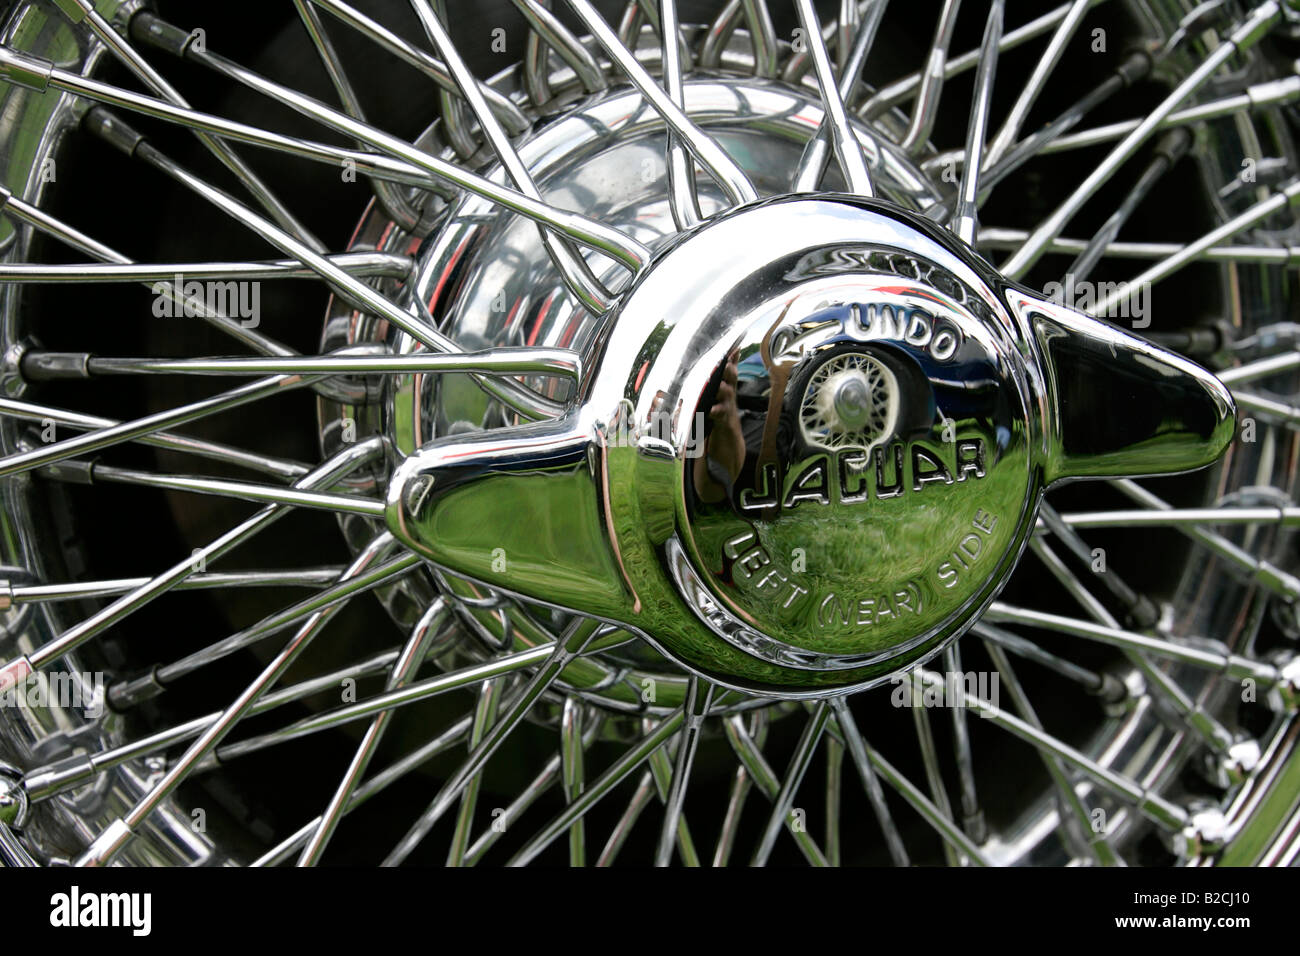 Jaguar Transport super sport Auto Automobil Fahrzeug exotische schnelle Geschwindigkeit macht mächtig Luxus teure Kunst klassische Autoreifen Stockfoto